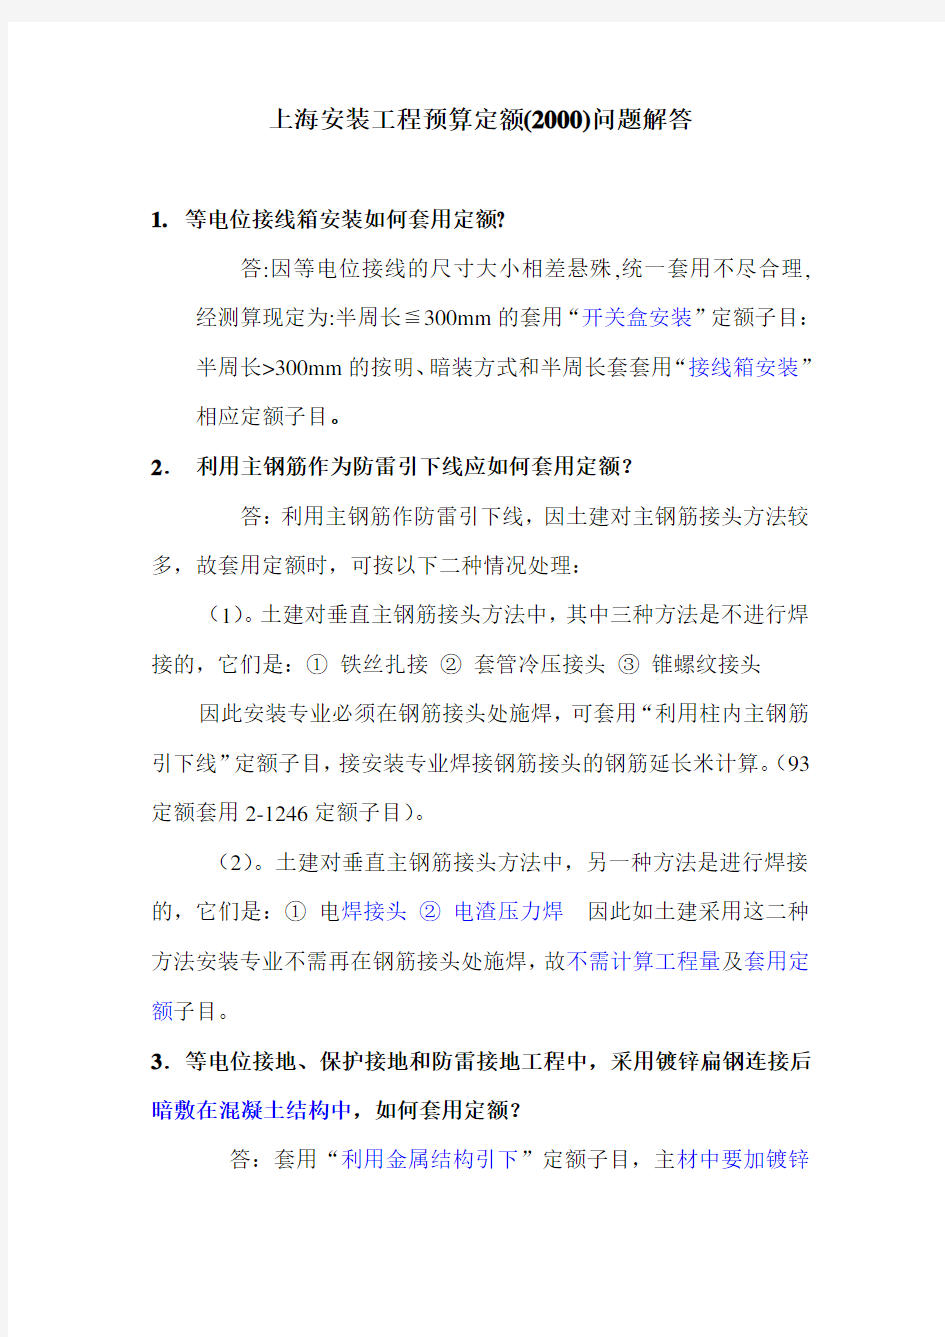 上海安装工程预算定额(2000)问题解答..